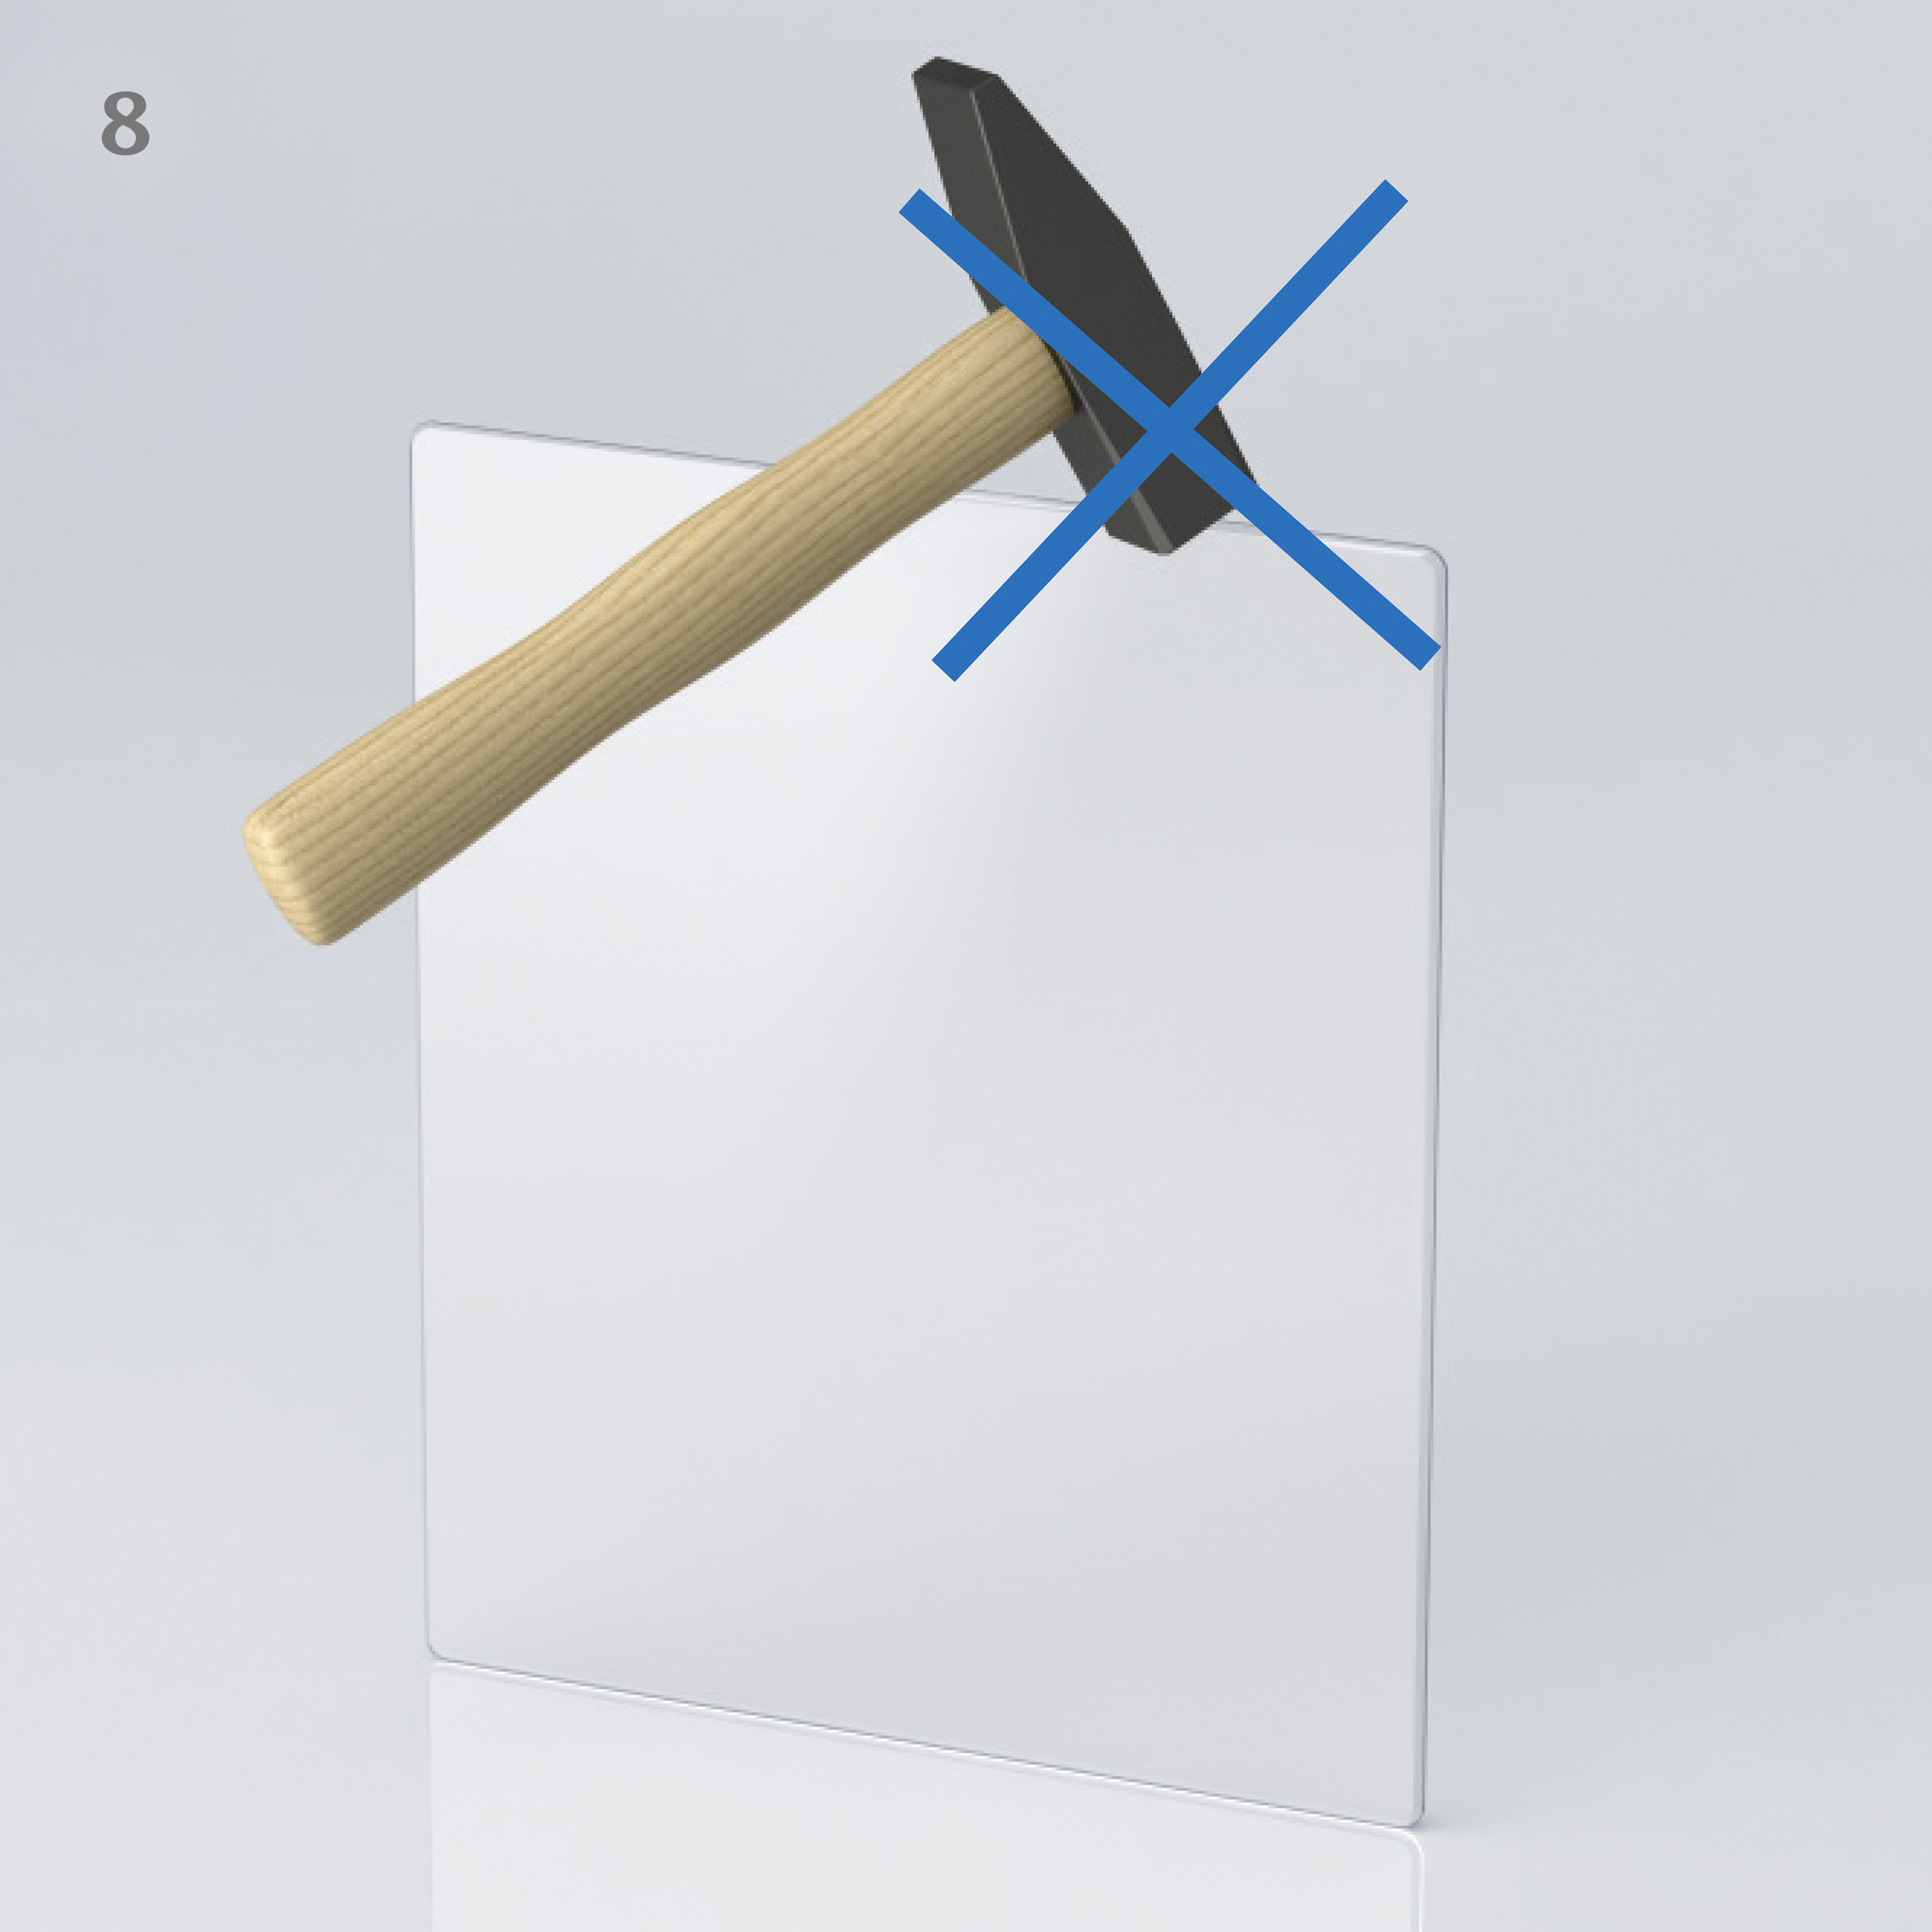 Abbildung eines Hammers, der auf eine Seite einer Glasscheibe trifft